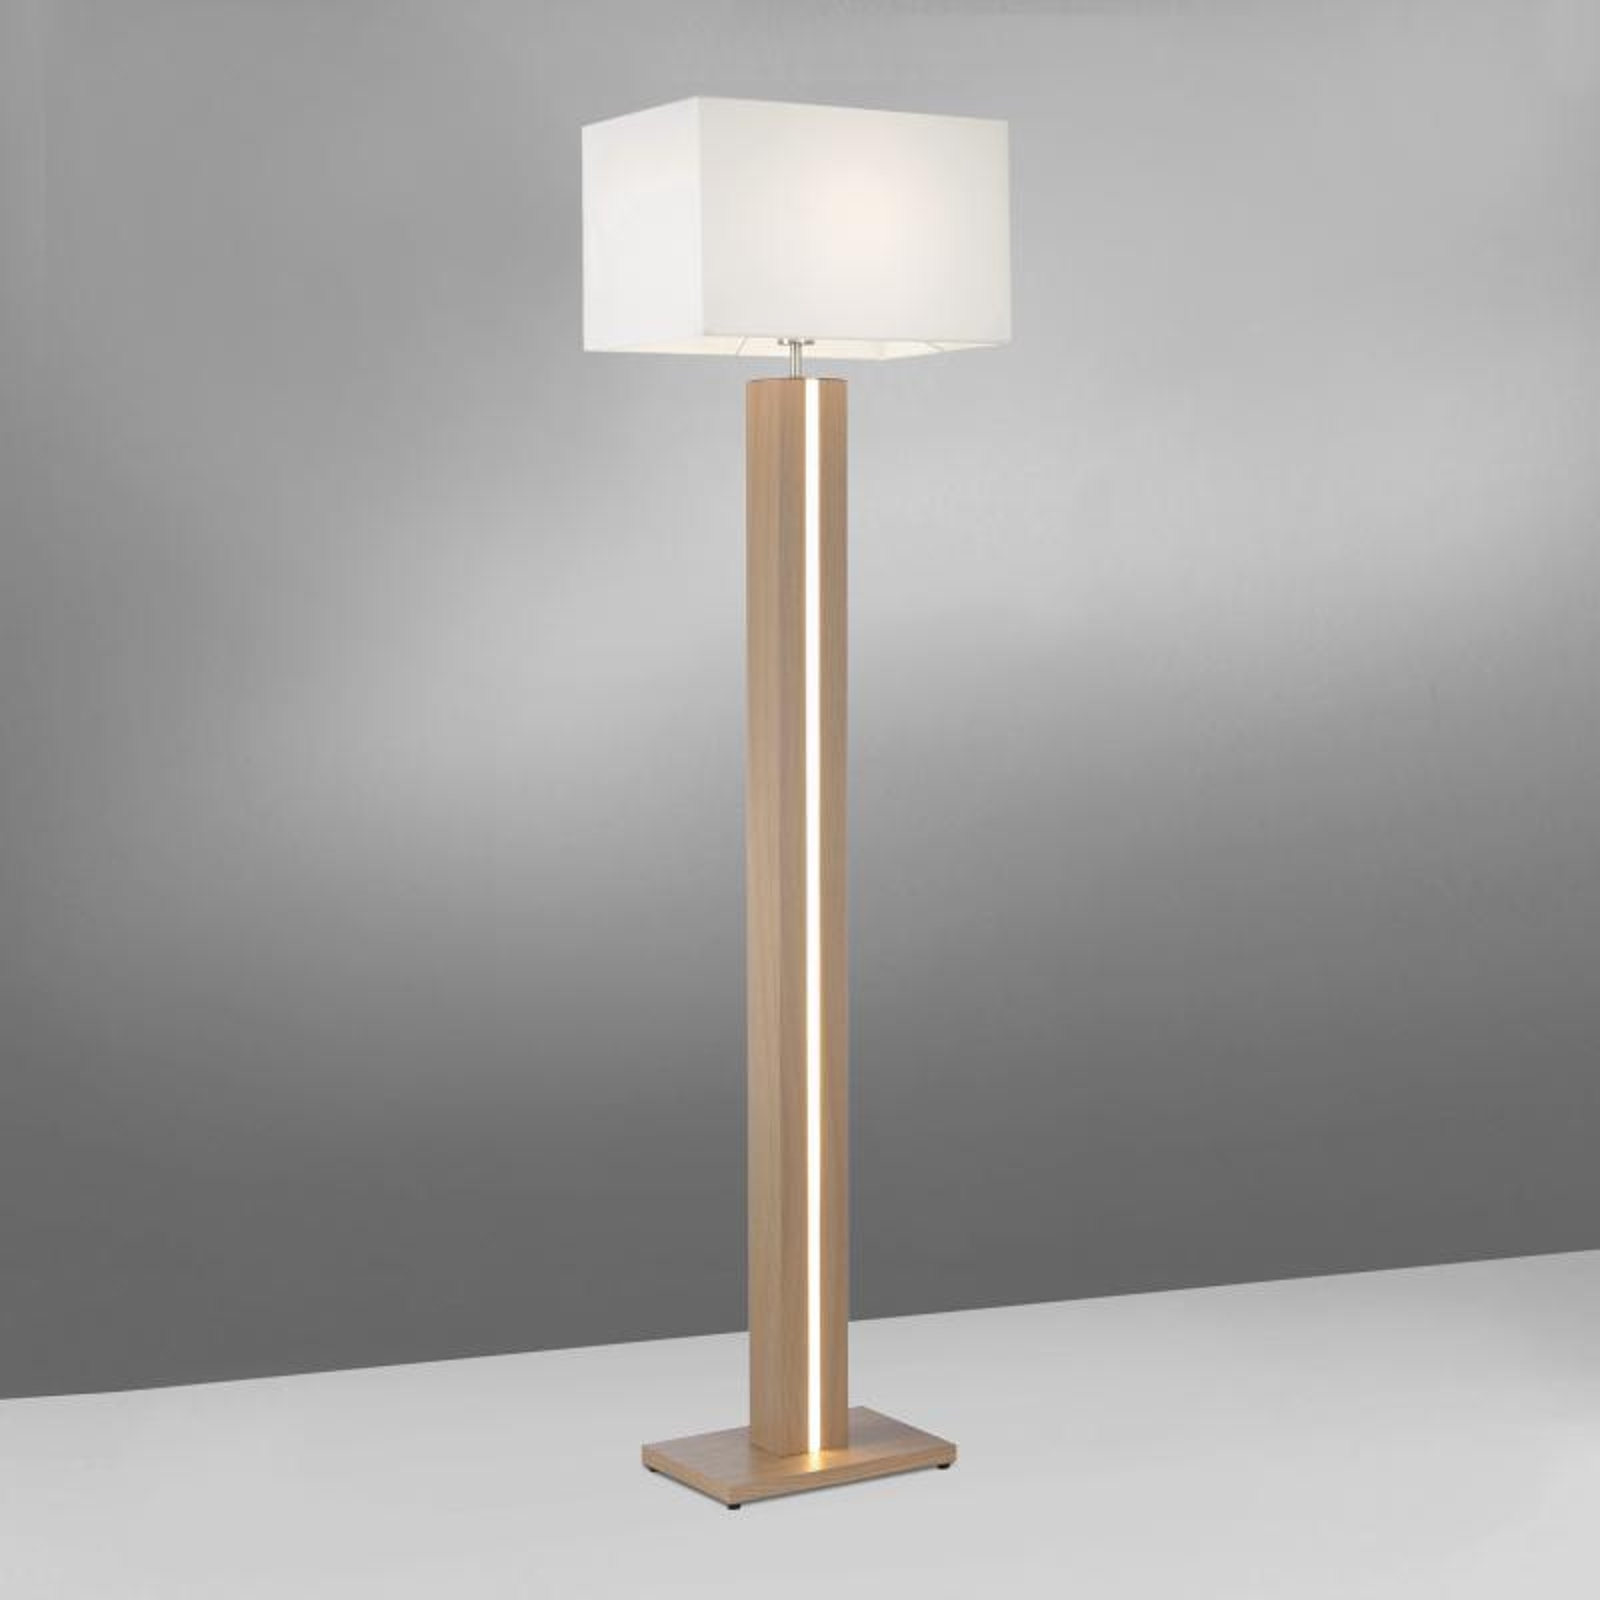 Amanda Wooden Floor Lamp Cct White, Rustic Wooden Floor Lamp Uk